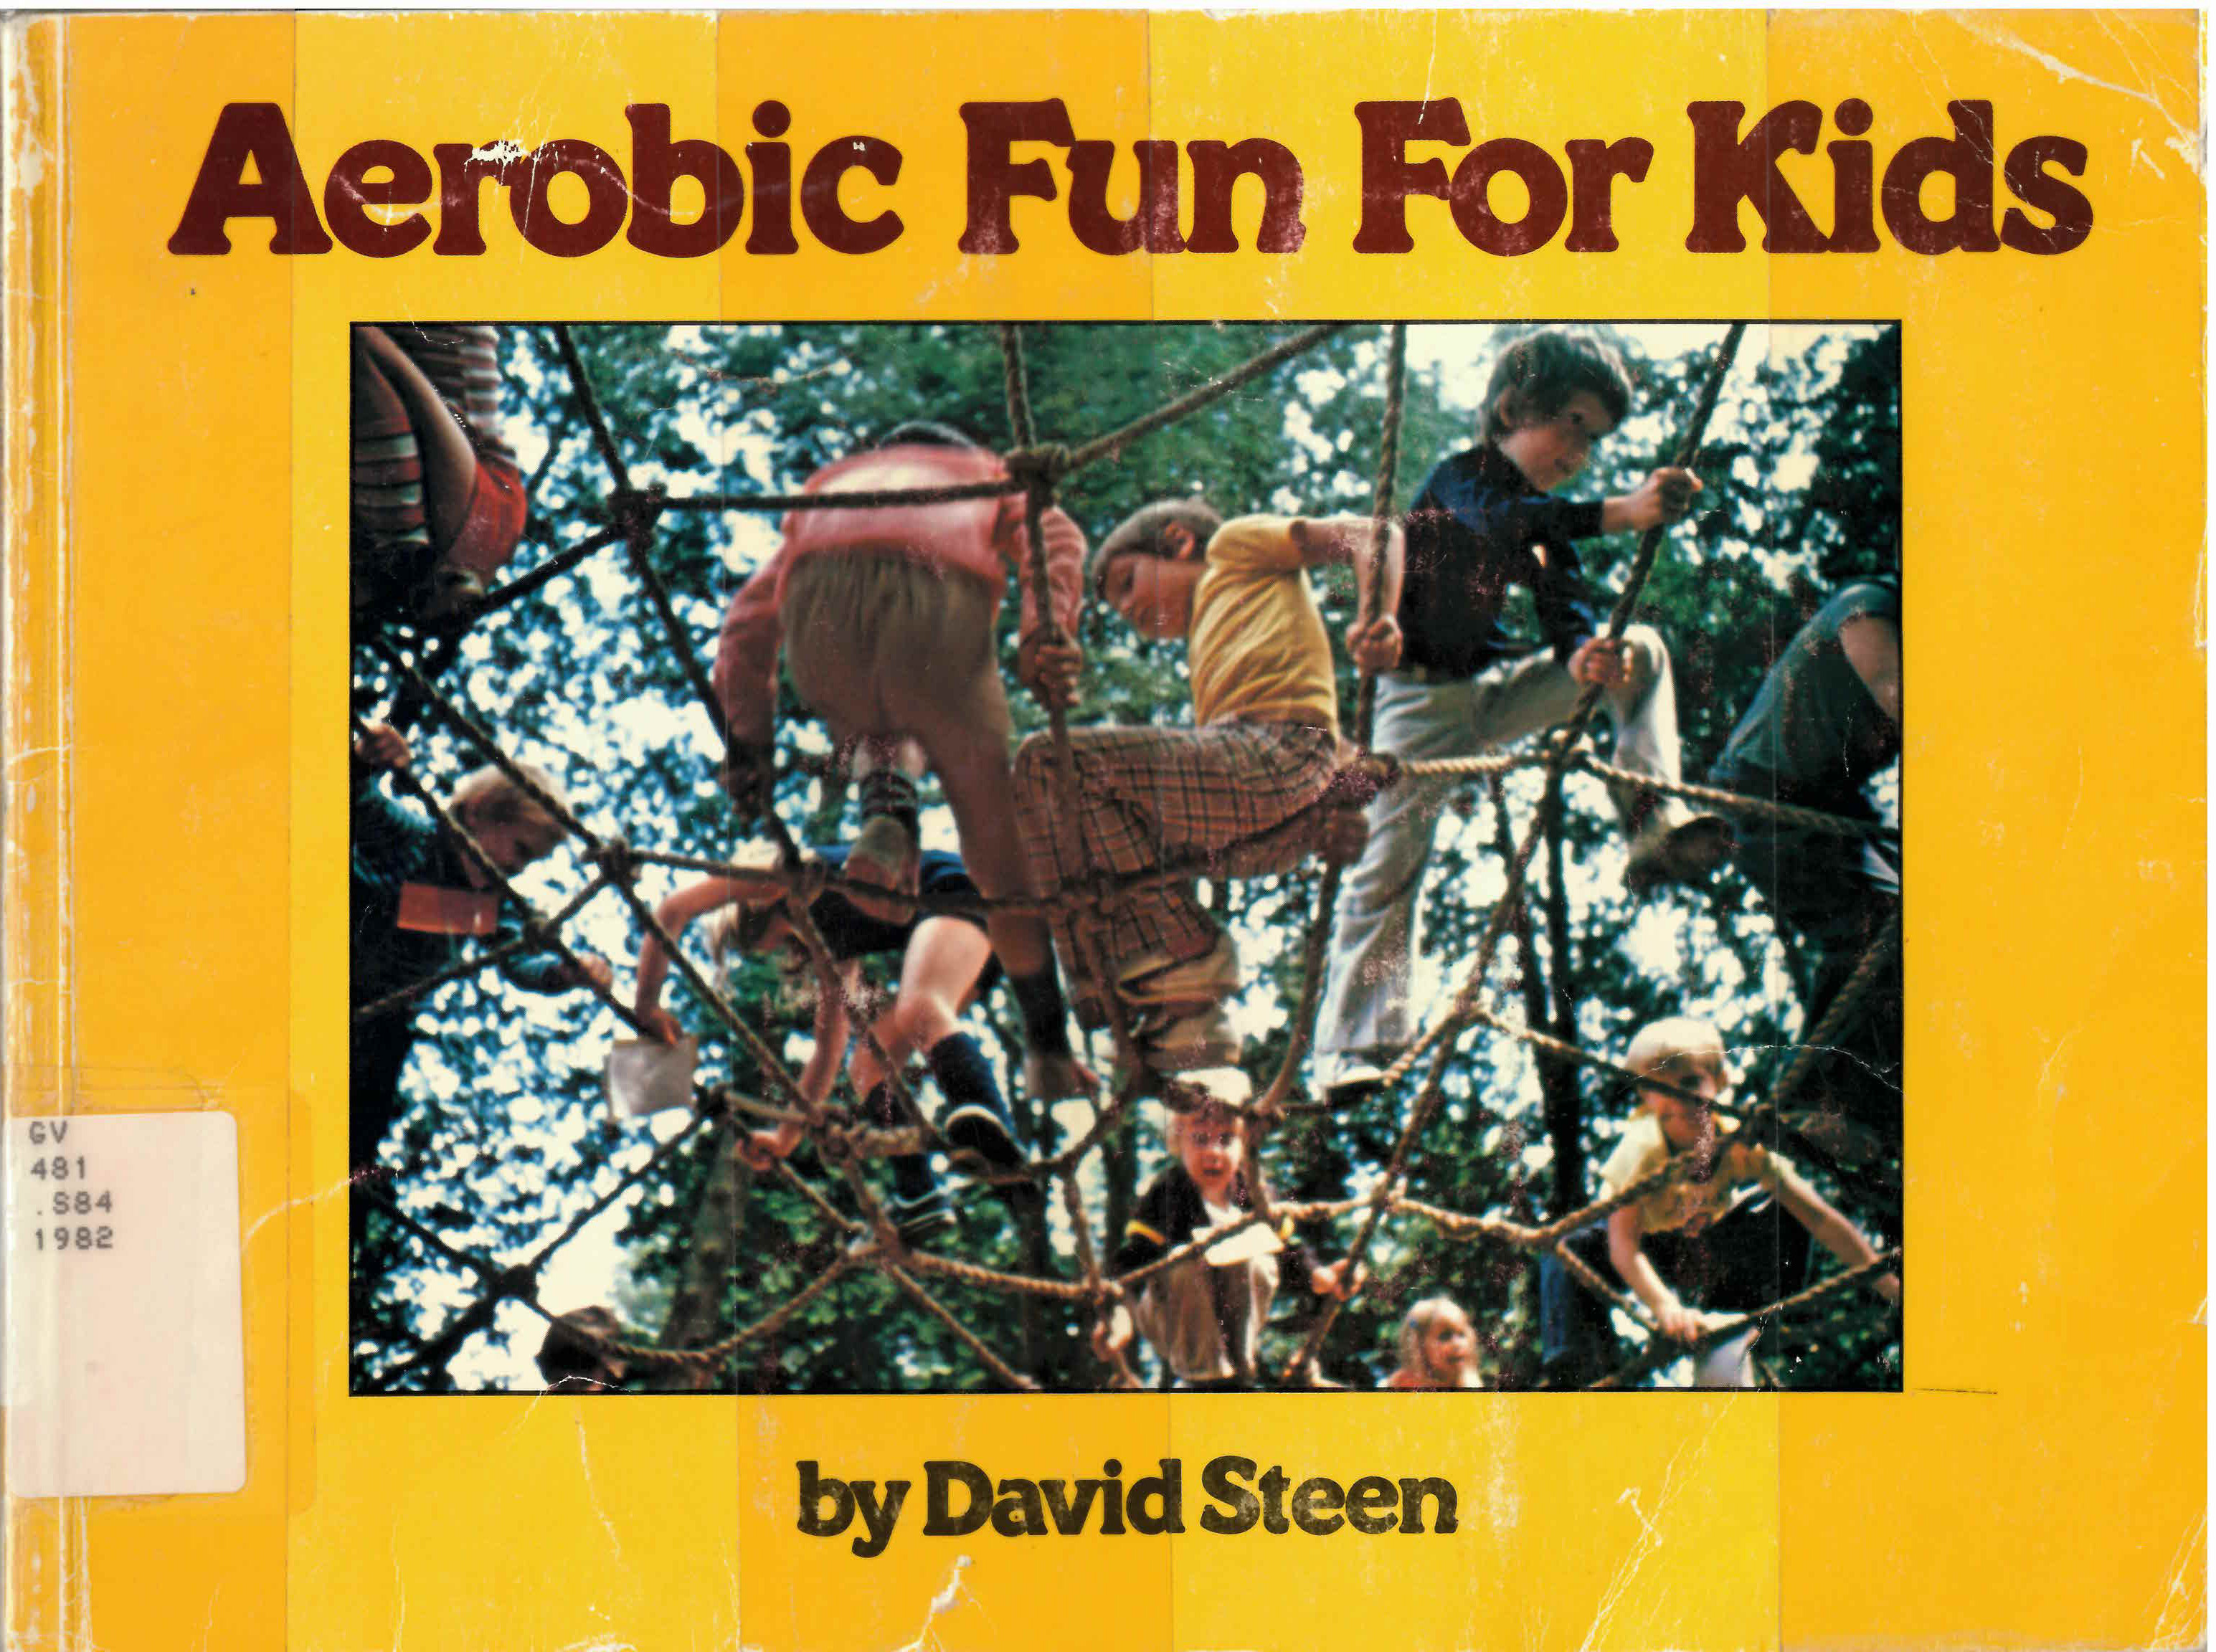 Aerobic fun for kids